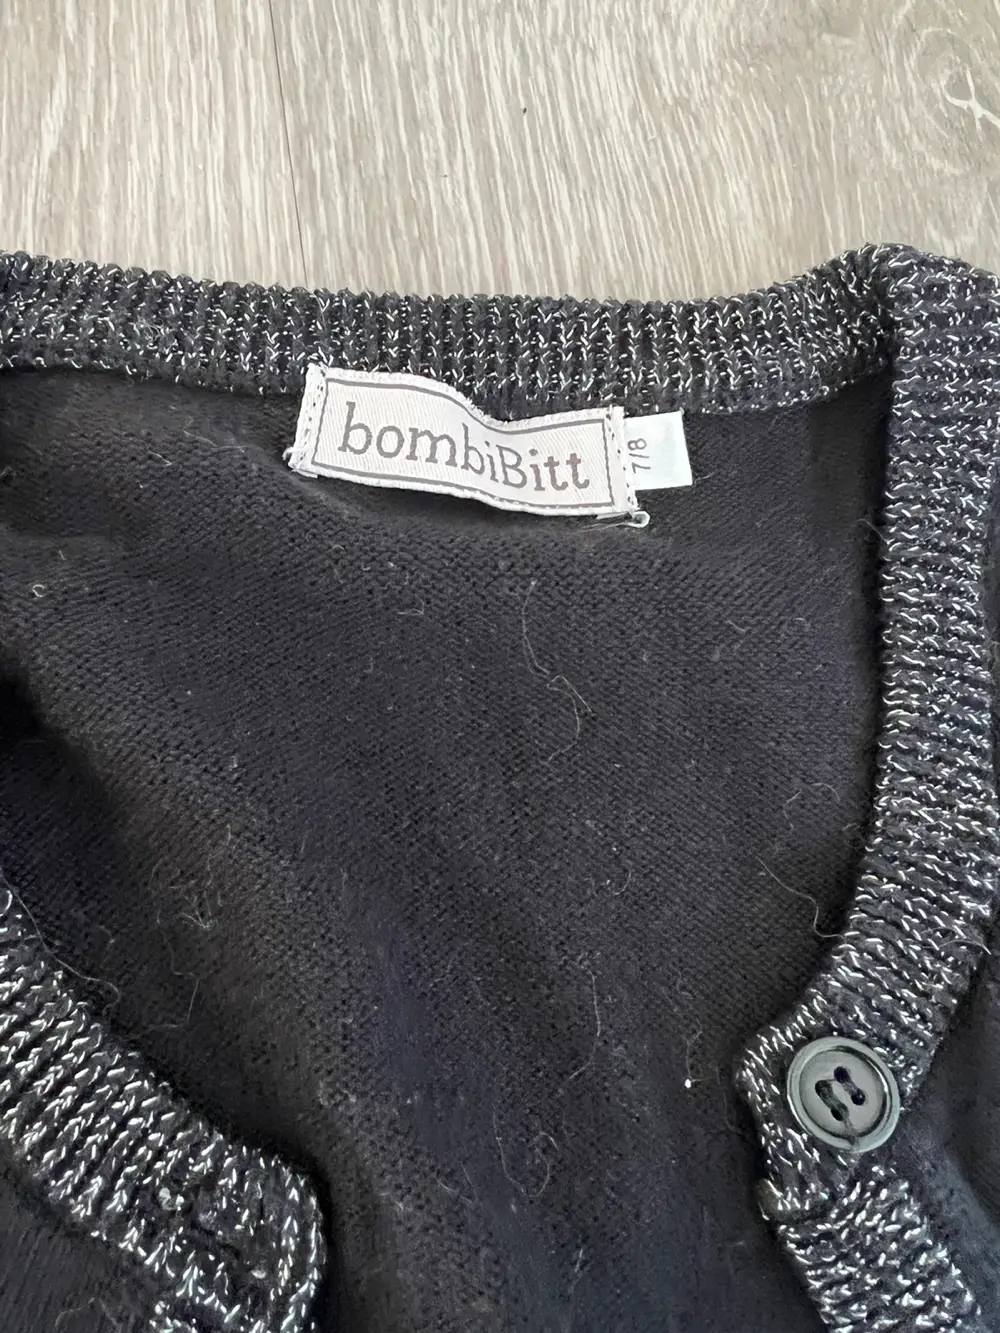 Køb bombiBitt Cardigans i størrelse 128 af Ann-Dorthe Nebeling på Reshopper · Shop secondhand børn, mor og bolig